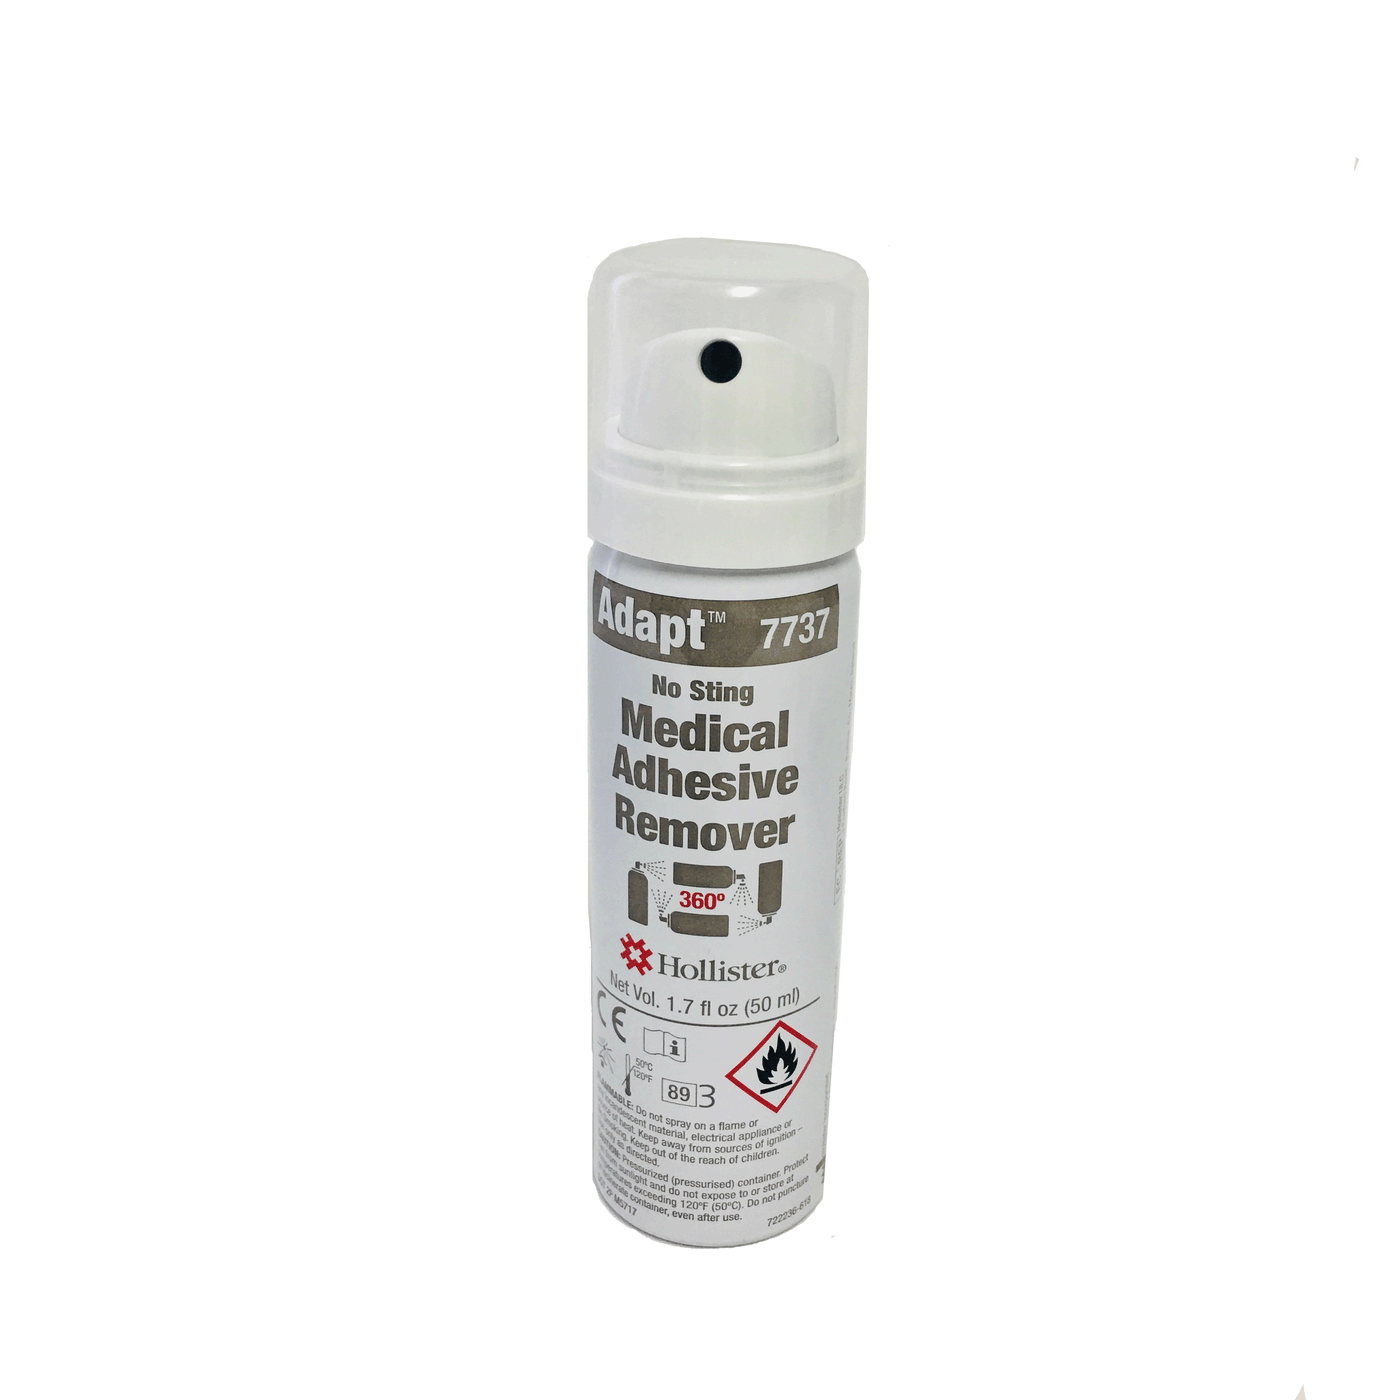 adapt medical adhesive spray